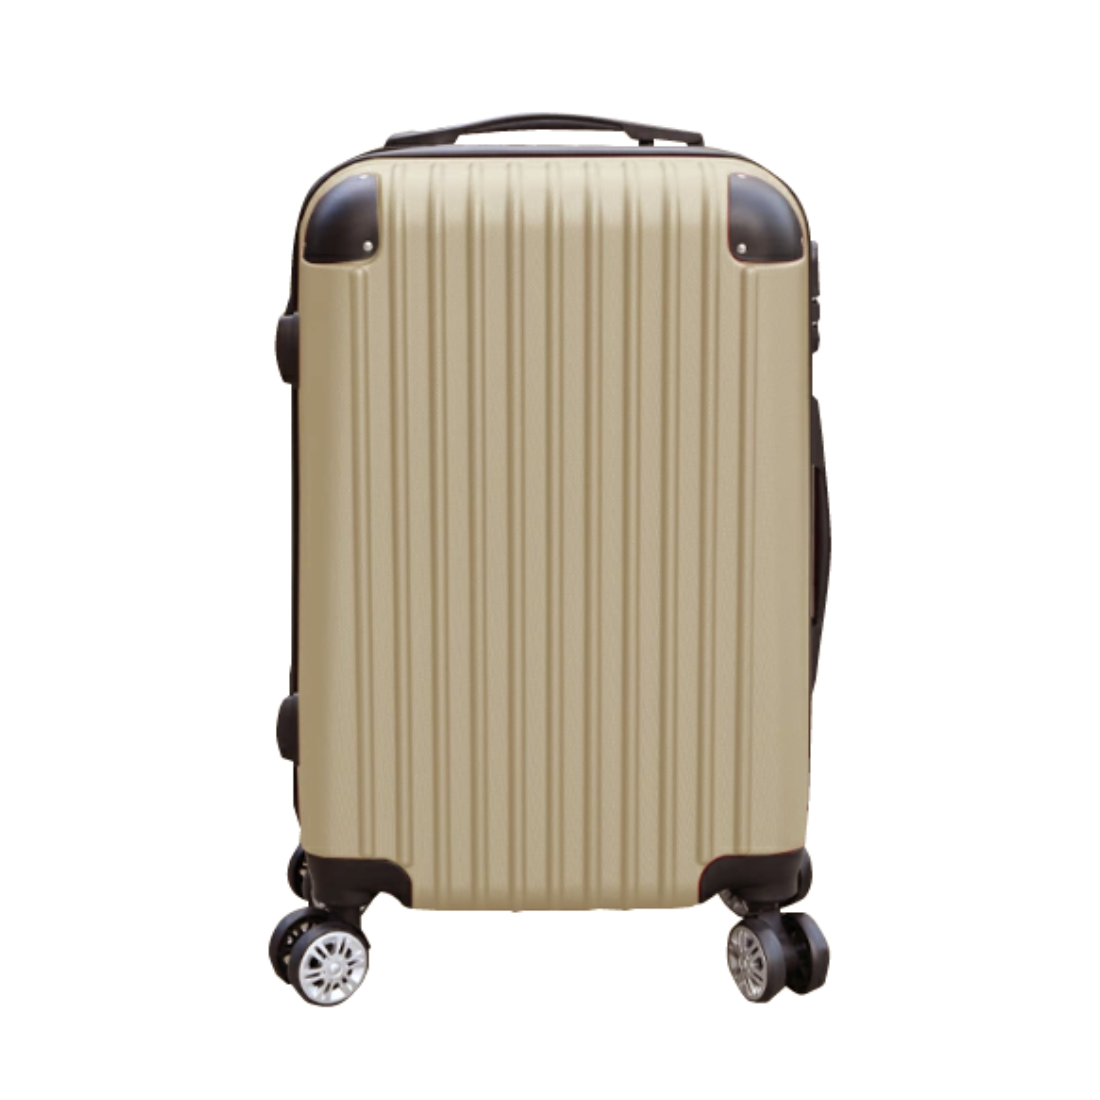 スーツケース Lサイズ 軽量 キャリー 旅行カバン ダブル キャスター